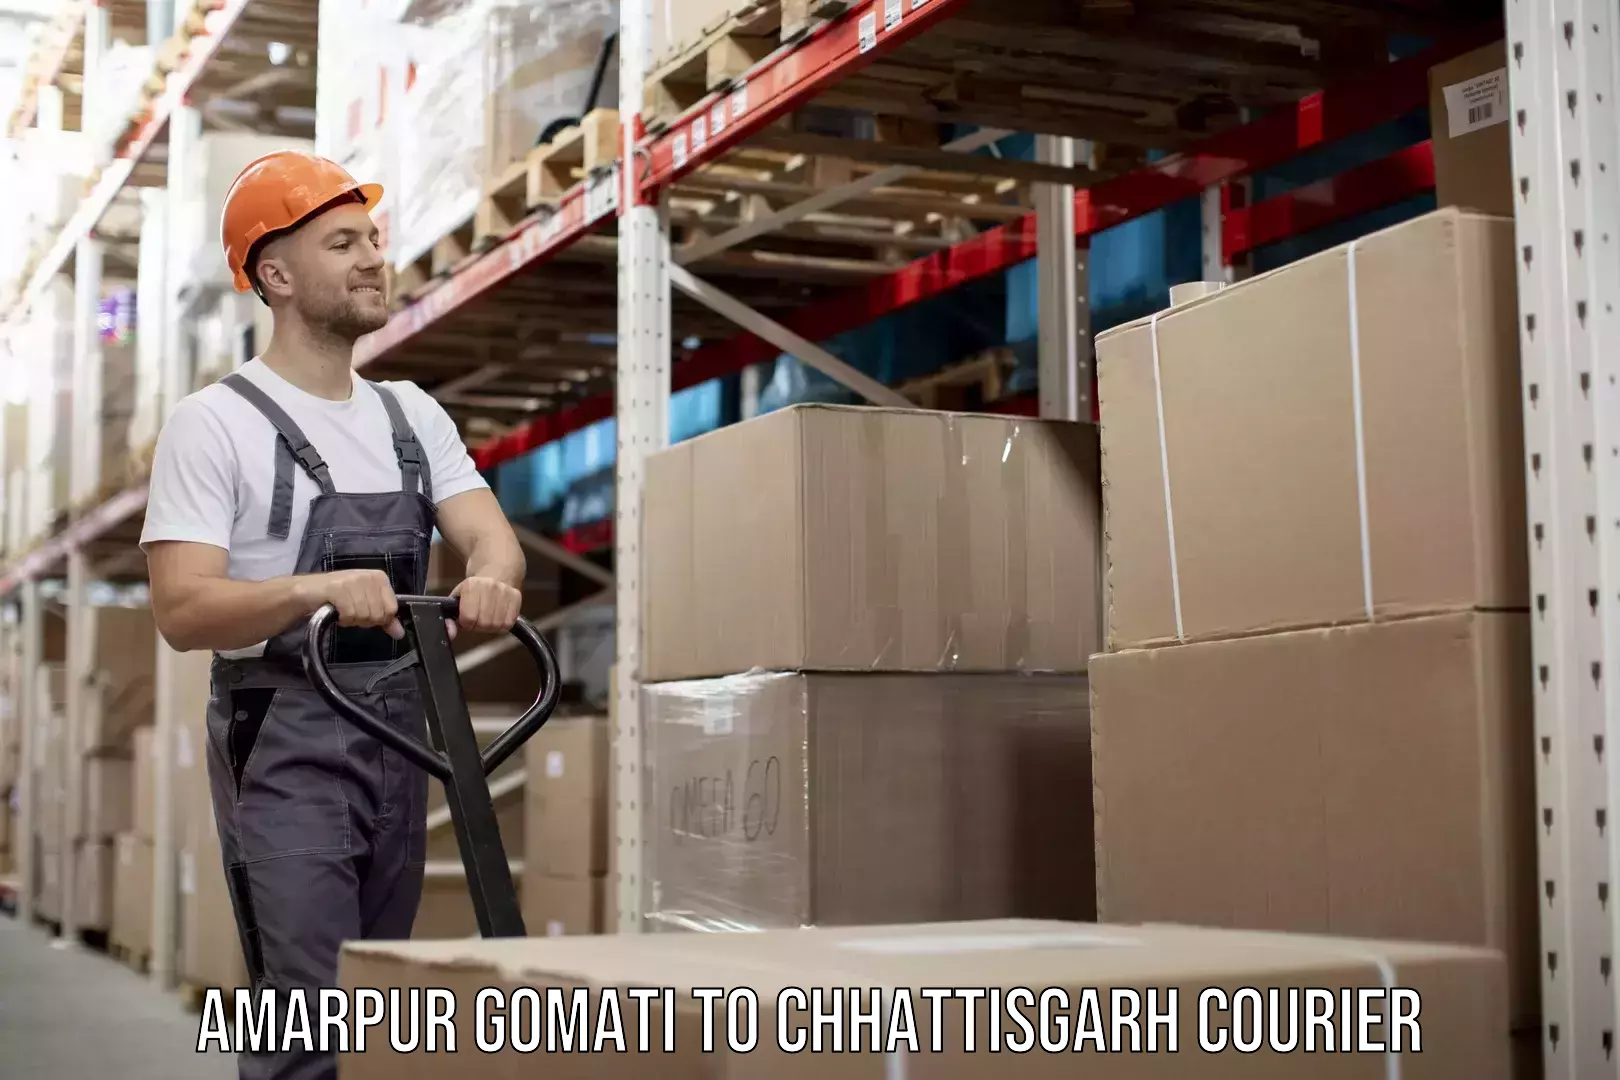 User-friendly delivery service Amarpur Gomati to Chhattisgarh